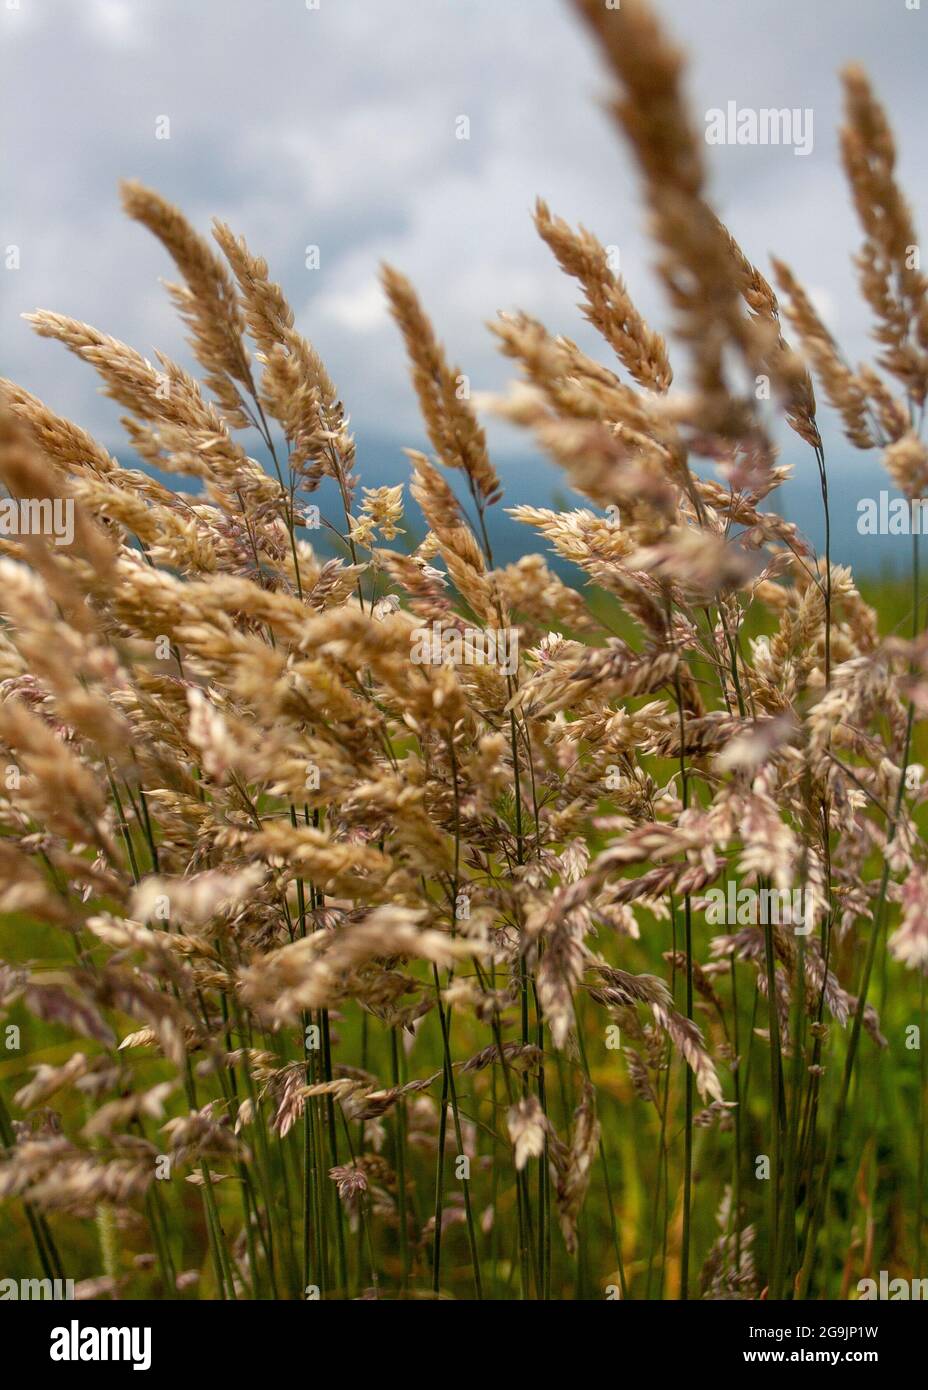 Primer plano de granos silvestres que crecen en un prado Foto de stock